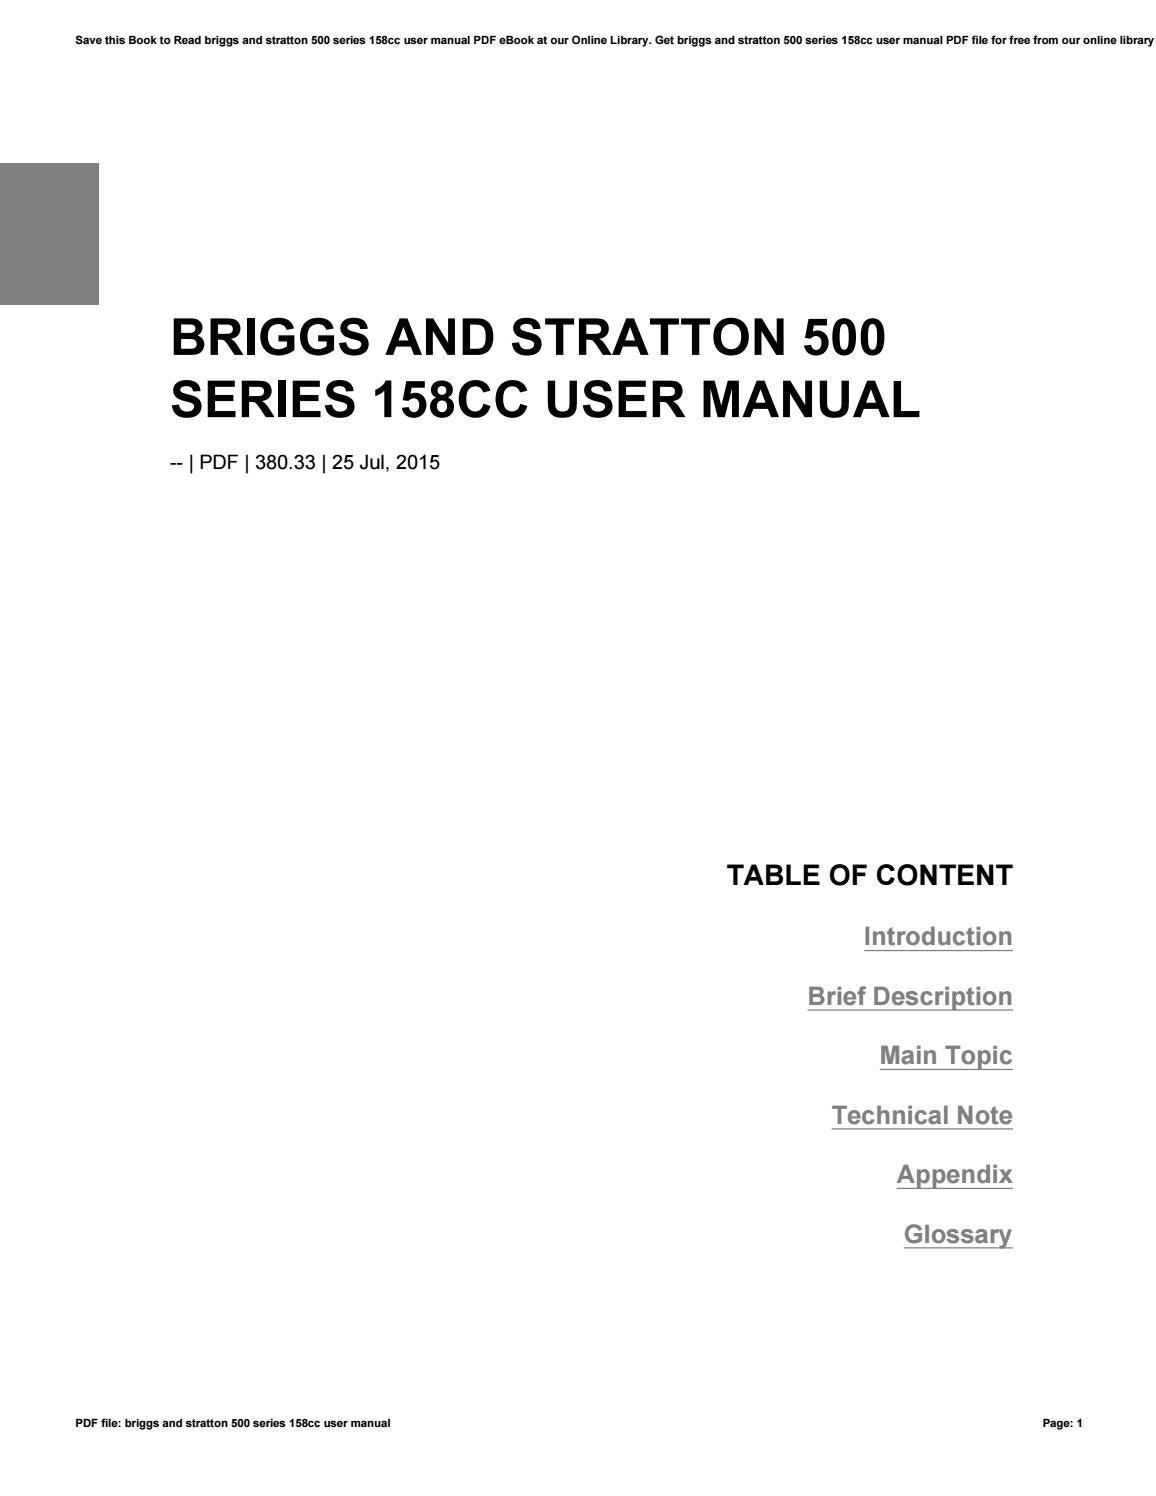 briggs and stratton 500 series repair manual pdf